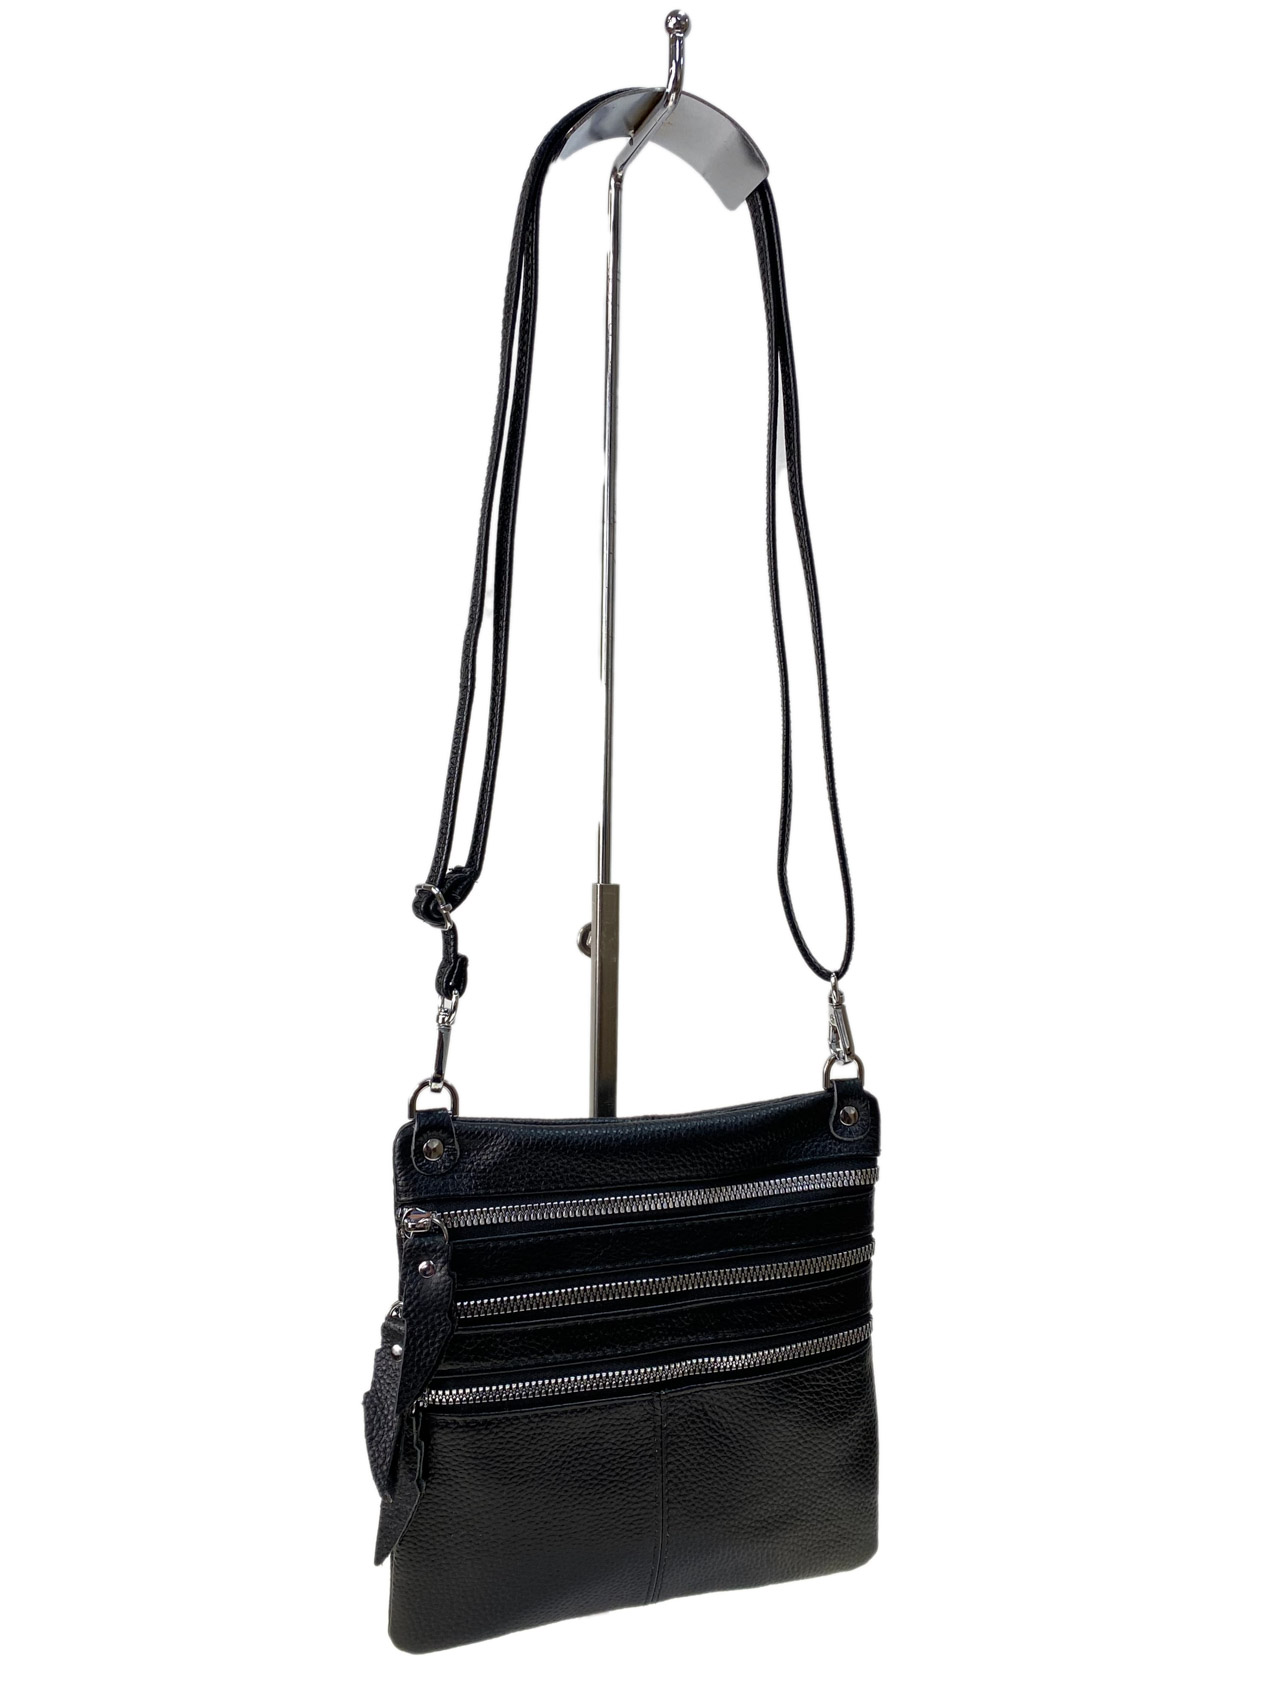 Женская сумка кросс боди из натуральной кожи, цвет черный